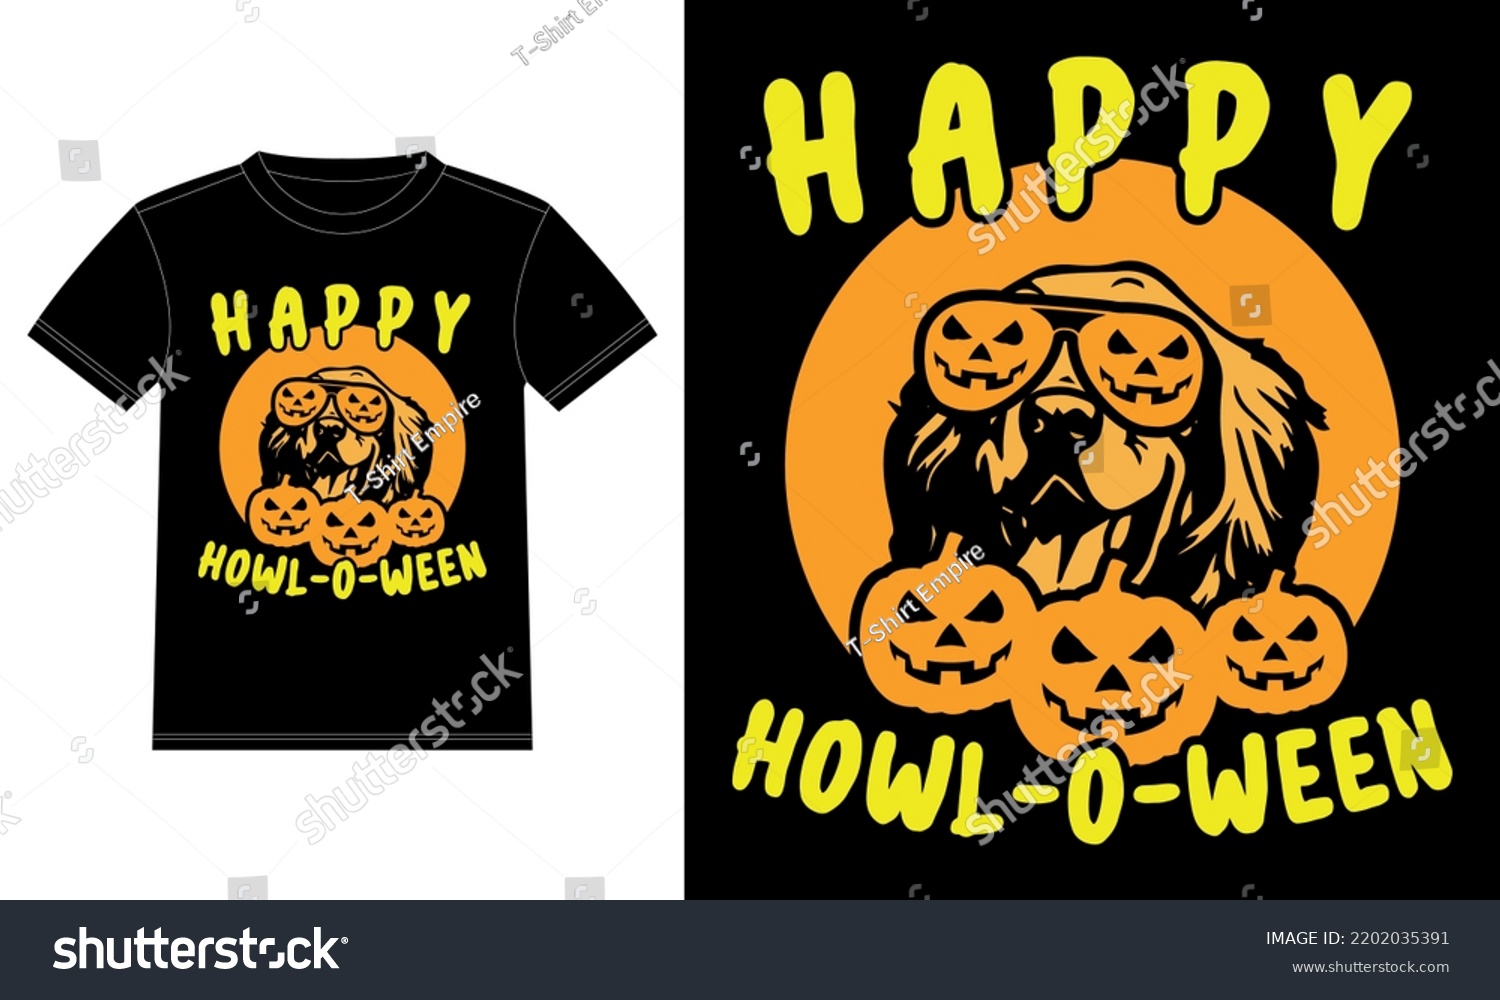 SVG of Golden Retriever Pumpkin Howl-o-ween T-Shirt  svg